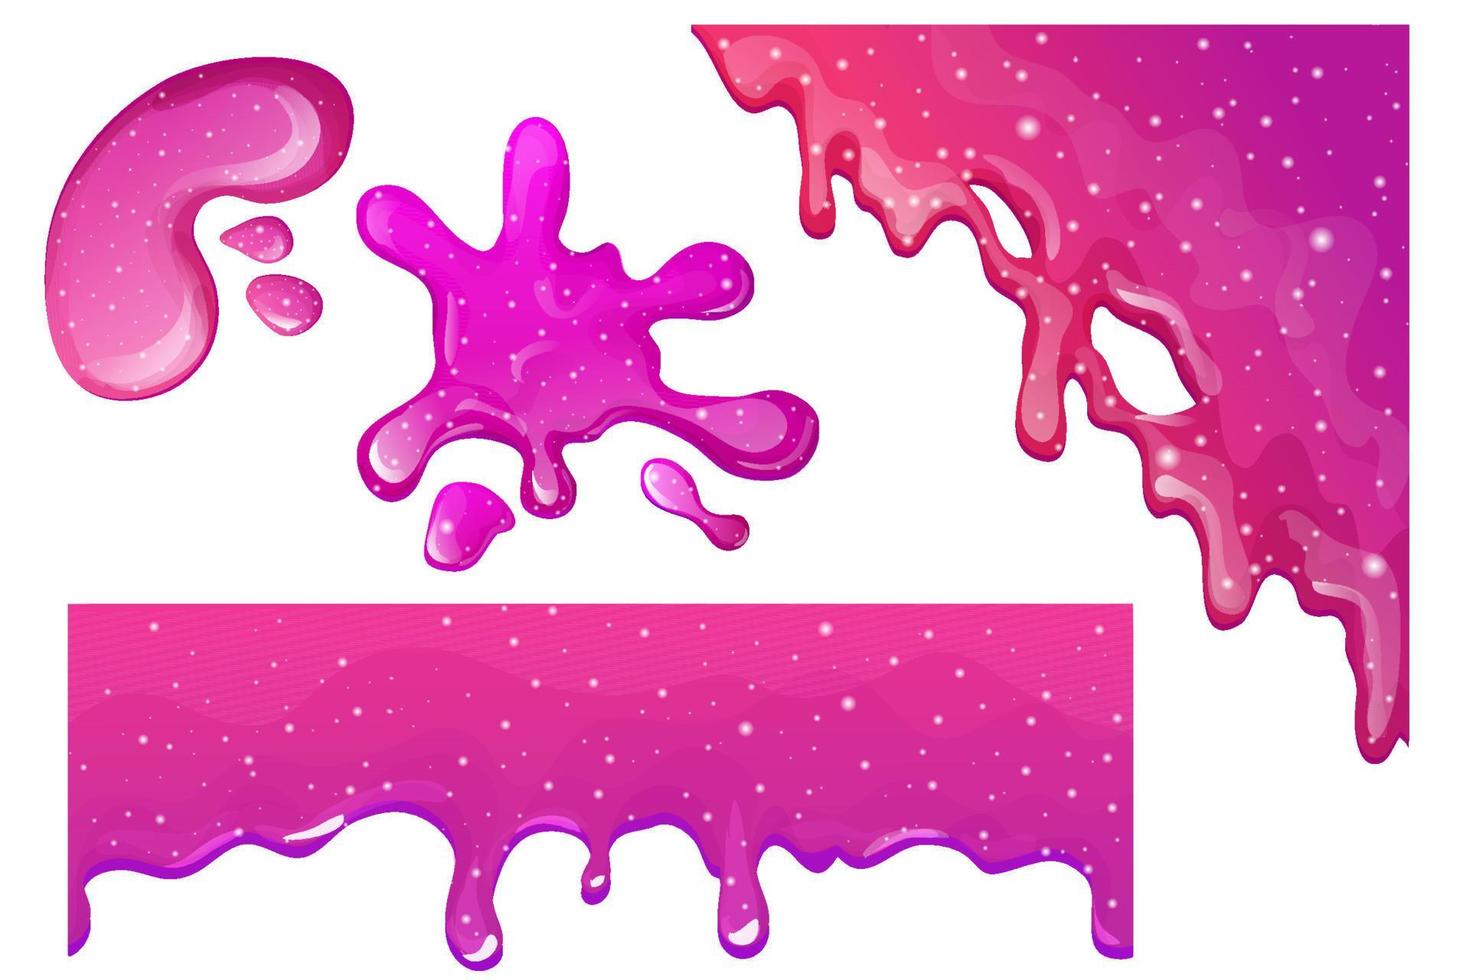 definir lodo roxo e rosa, esmalte de geléia com gotas e glitter no estilo cartoon sem costura isolado no fundo branco. ilustração vetorial vetor